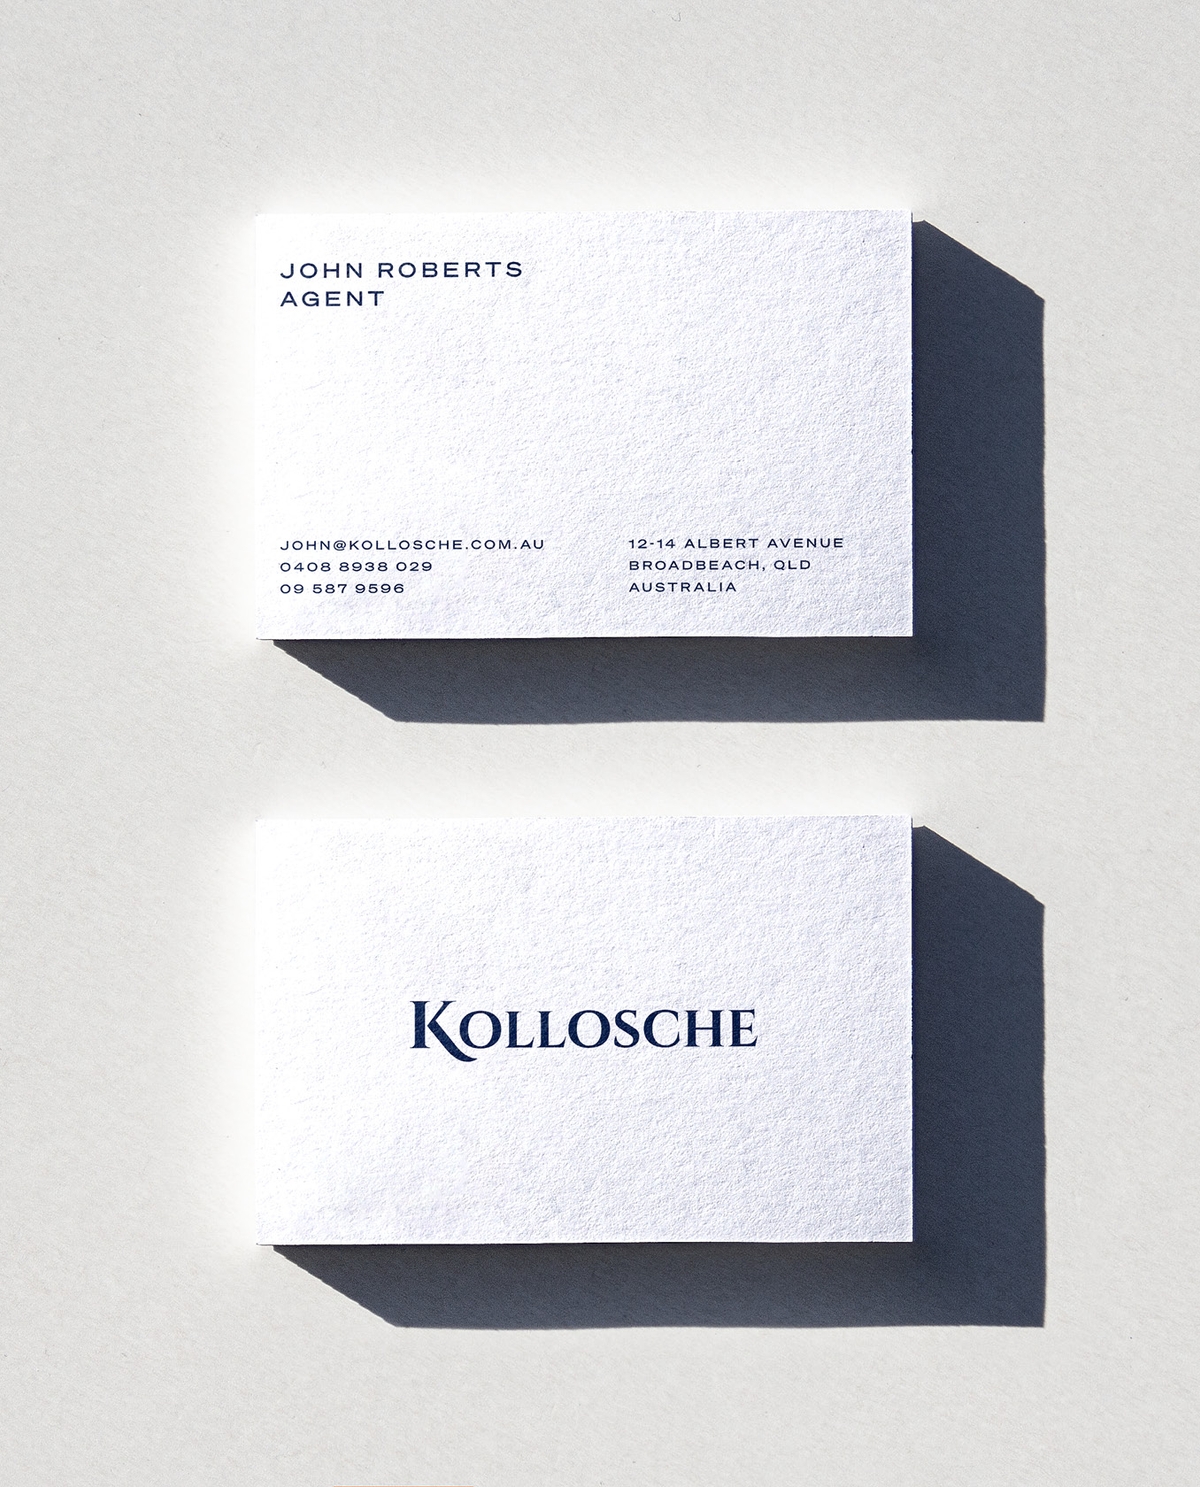 Kollosche Real Estate - Business Card - Printed Brandmark | Atollon - a design company